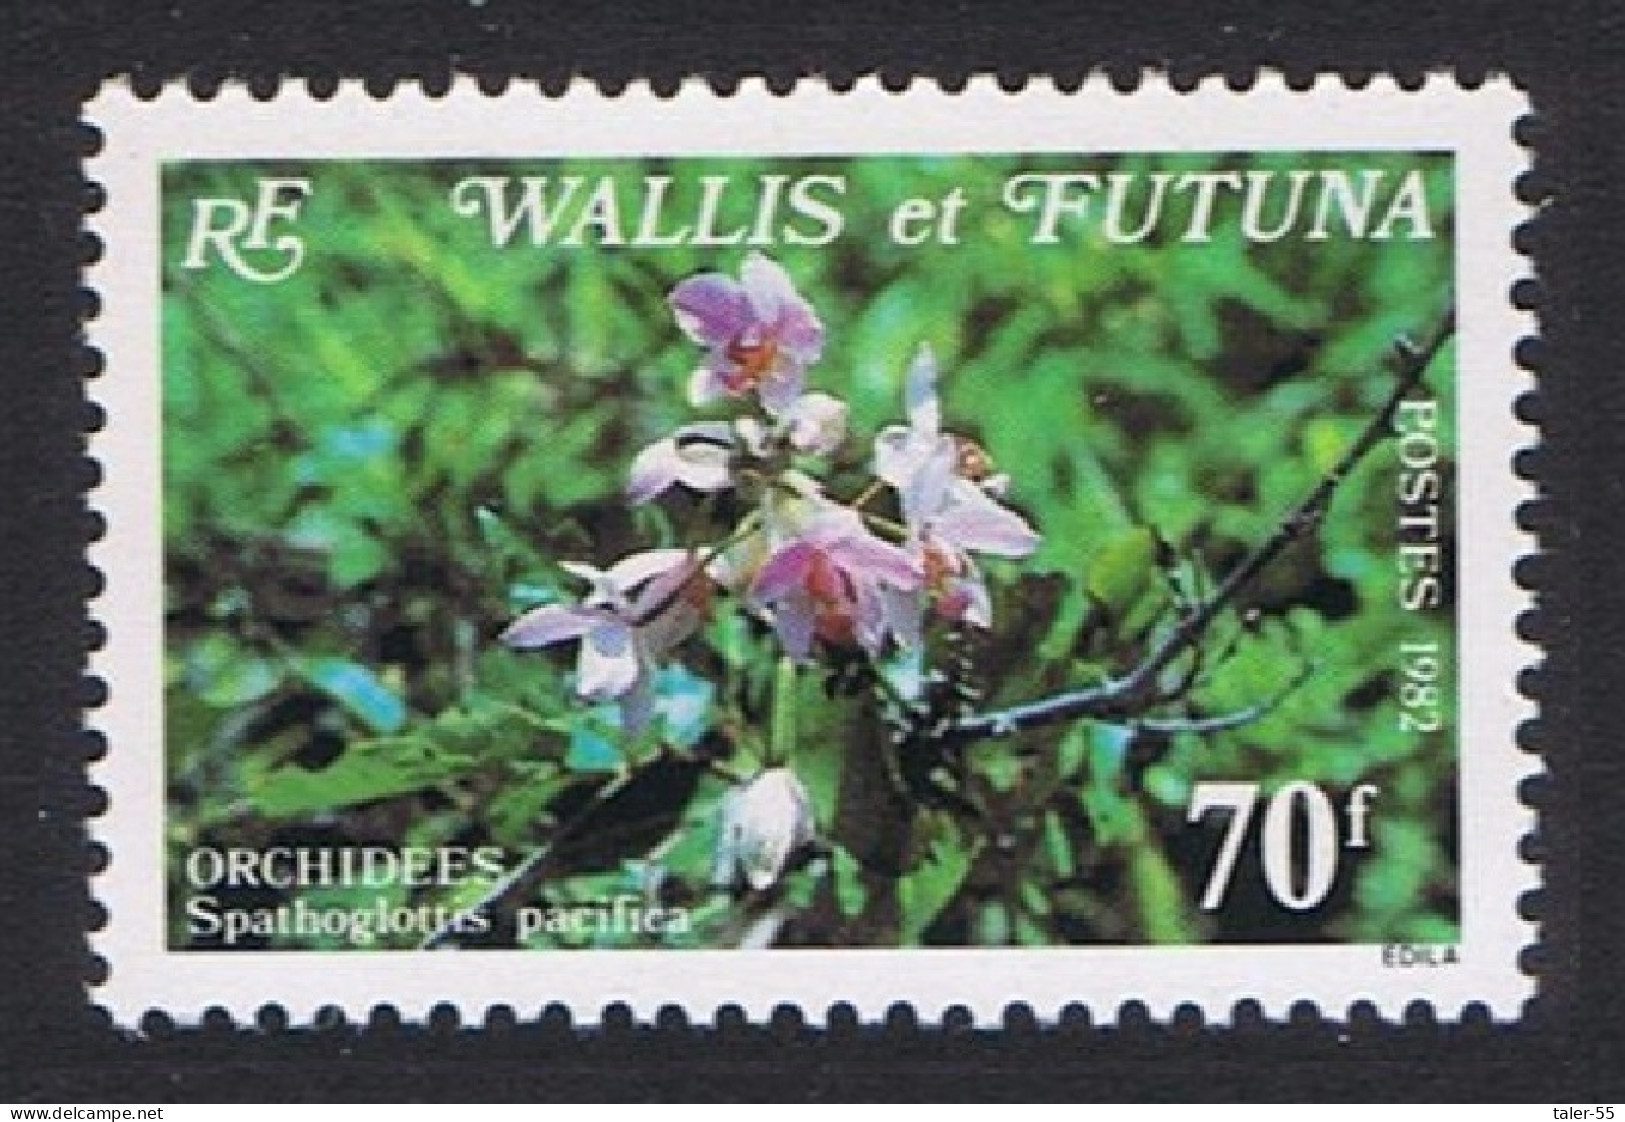 Wallis And Futuna Orchids Spathoglottis Pacifica 70f 1982 MNH SG#398 Sc#285 - Ongebruikt